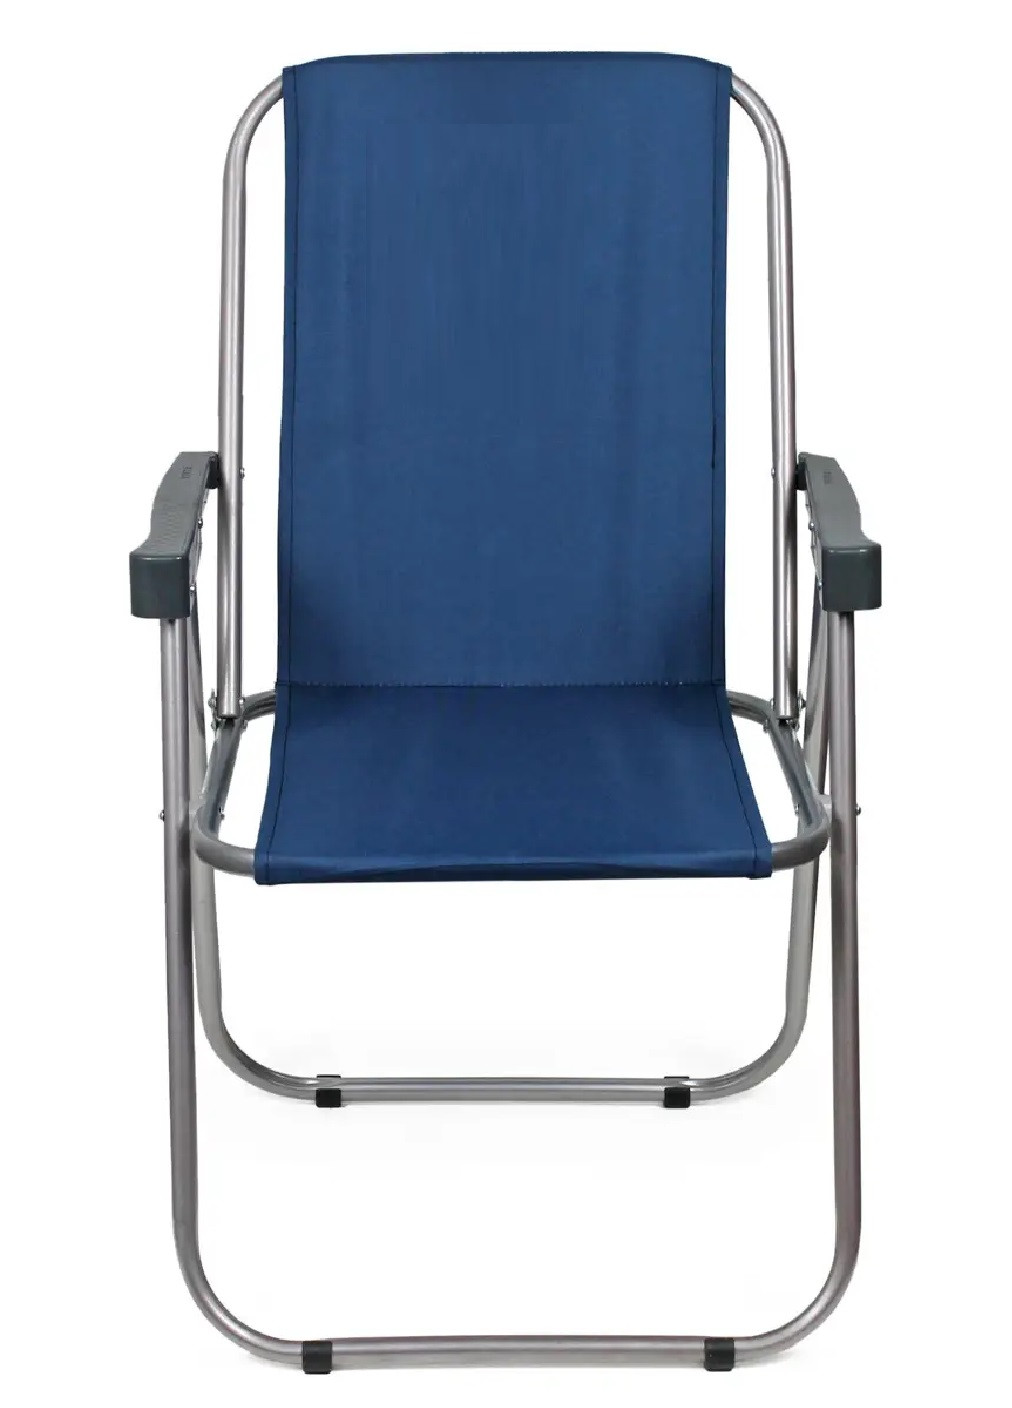 Раскладное кресло с подлокотниками стул складной для отдыха дачи рыбалки пикника кемпинга 49х50х79 см (474143-Prob) Синее Unbranded (257431275)